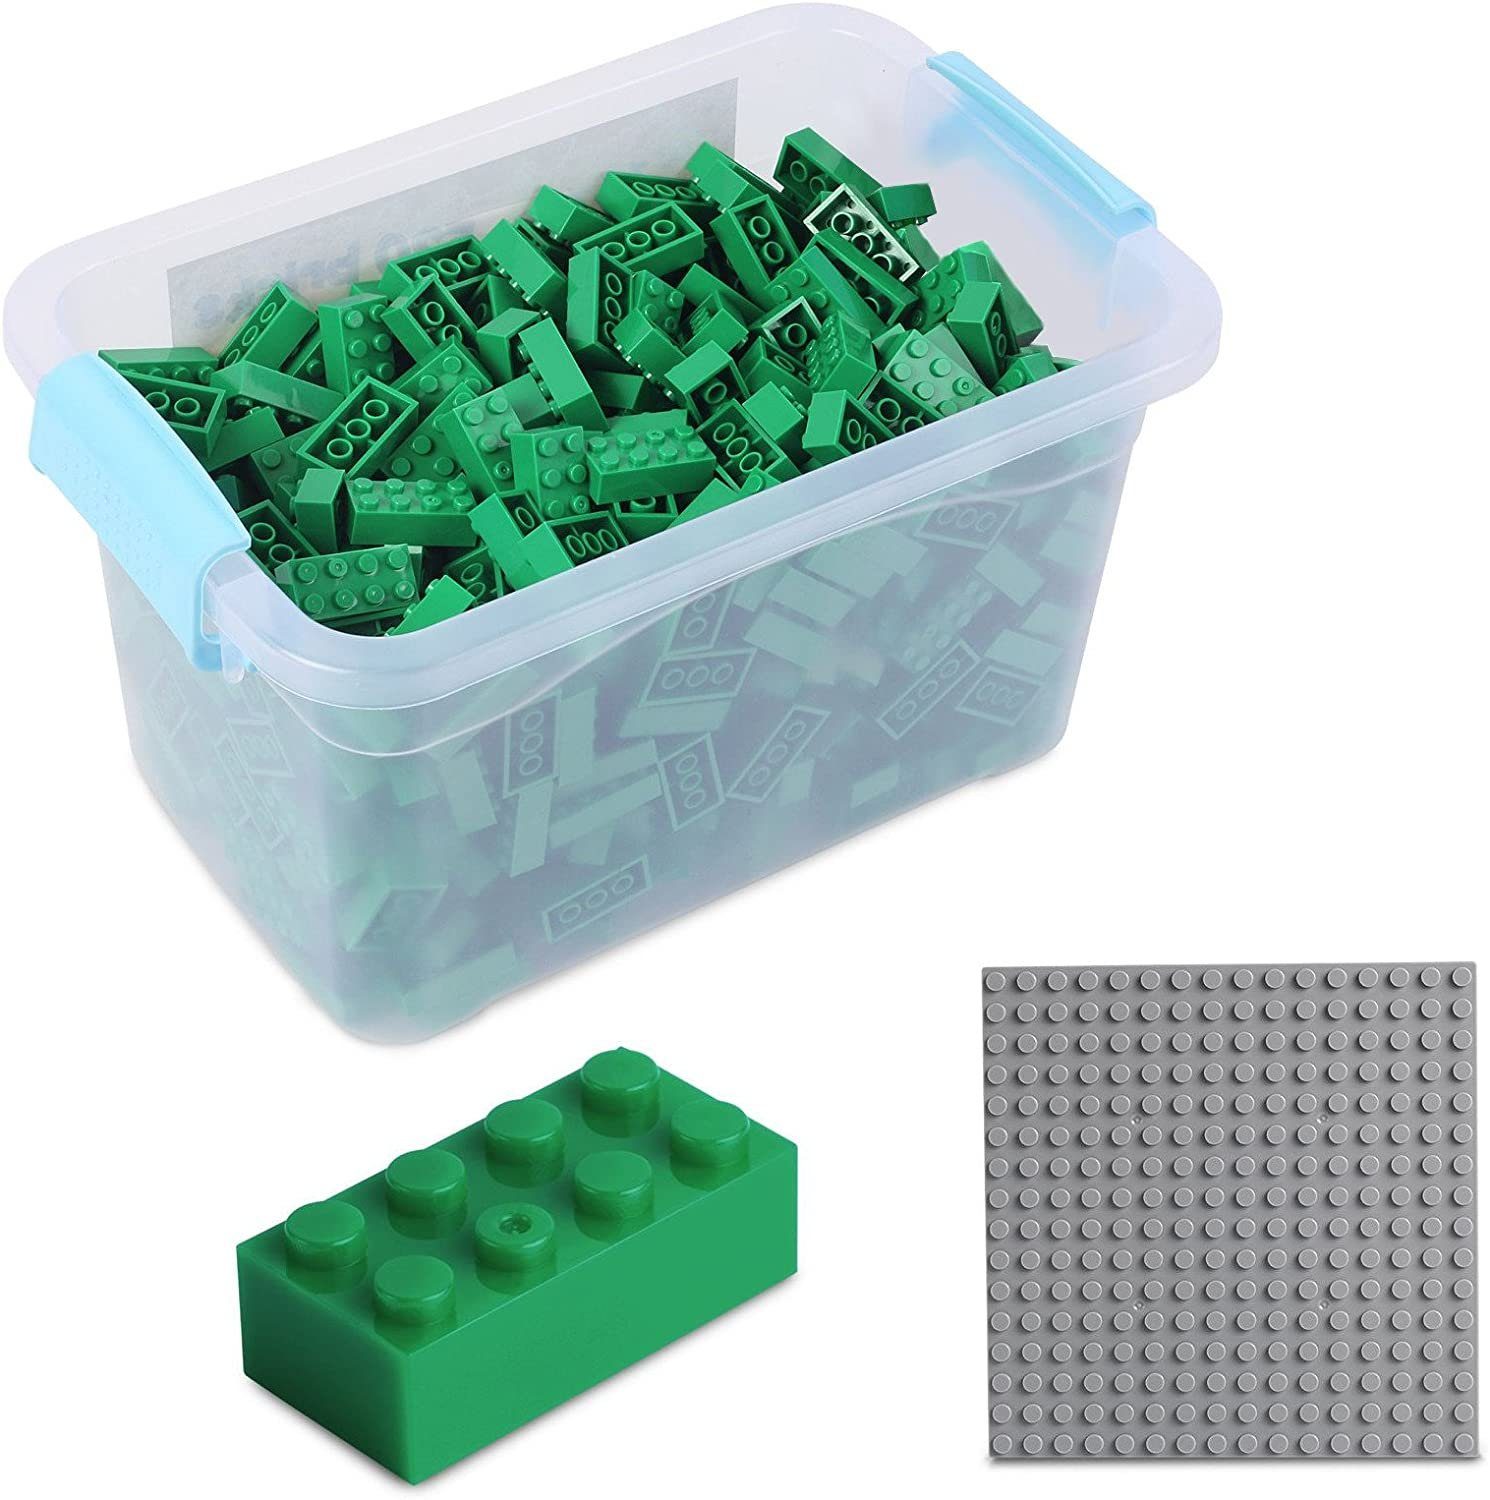 Katara Konstruktionsspielsteine Bausteine Box-Set mit 520 Steinen + Platte + Box, (3er Set), Kompatibel zu allen Anderen Herstellern - verschiedene Farben grün